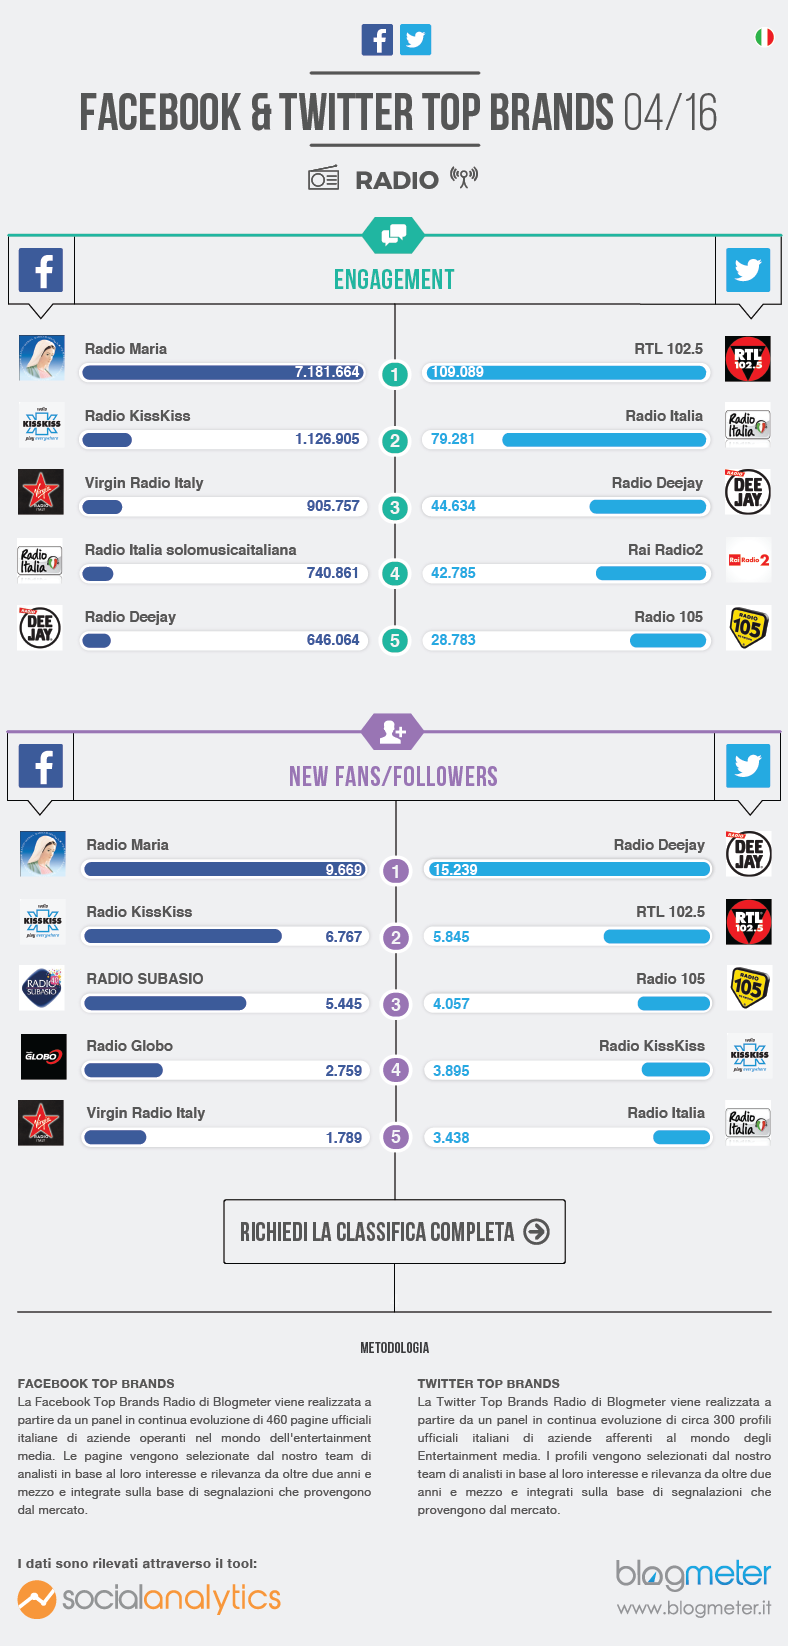 Le radio Top Brand su Facebook e Twitter del 2016